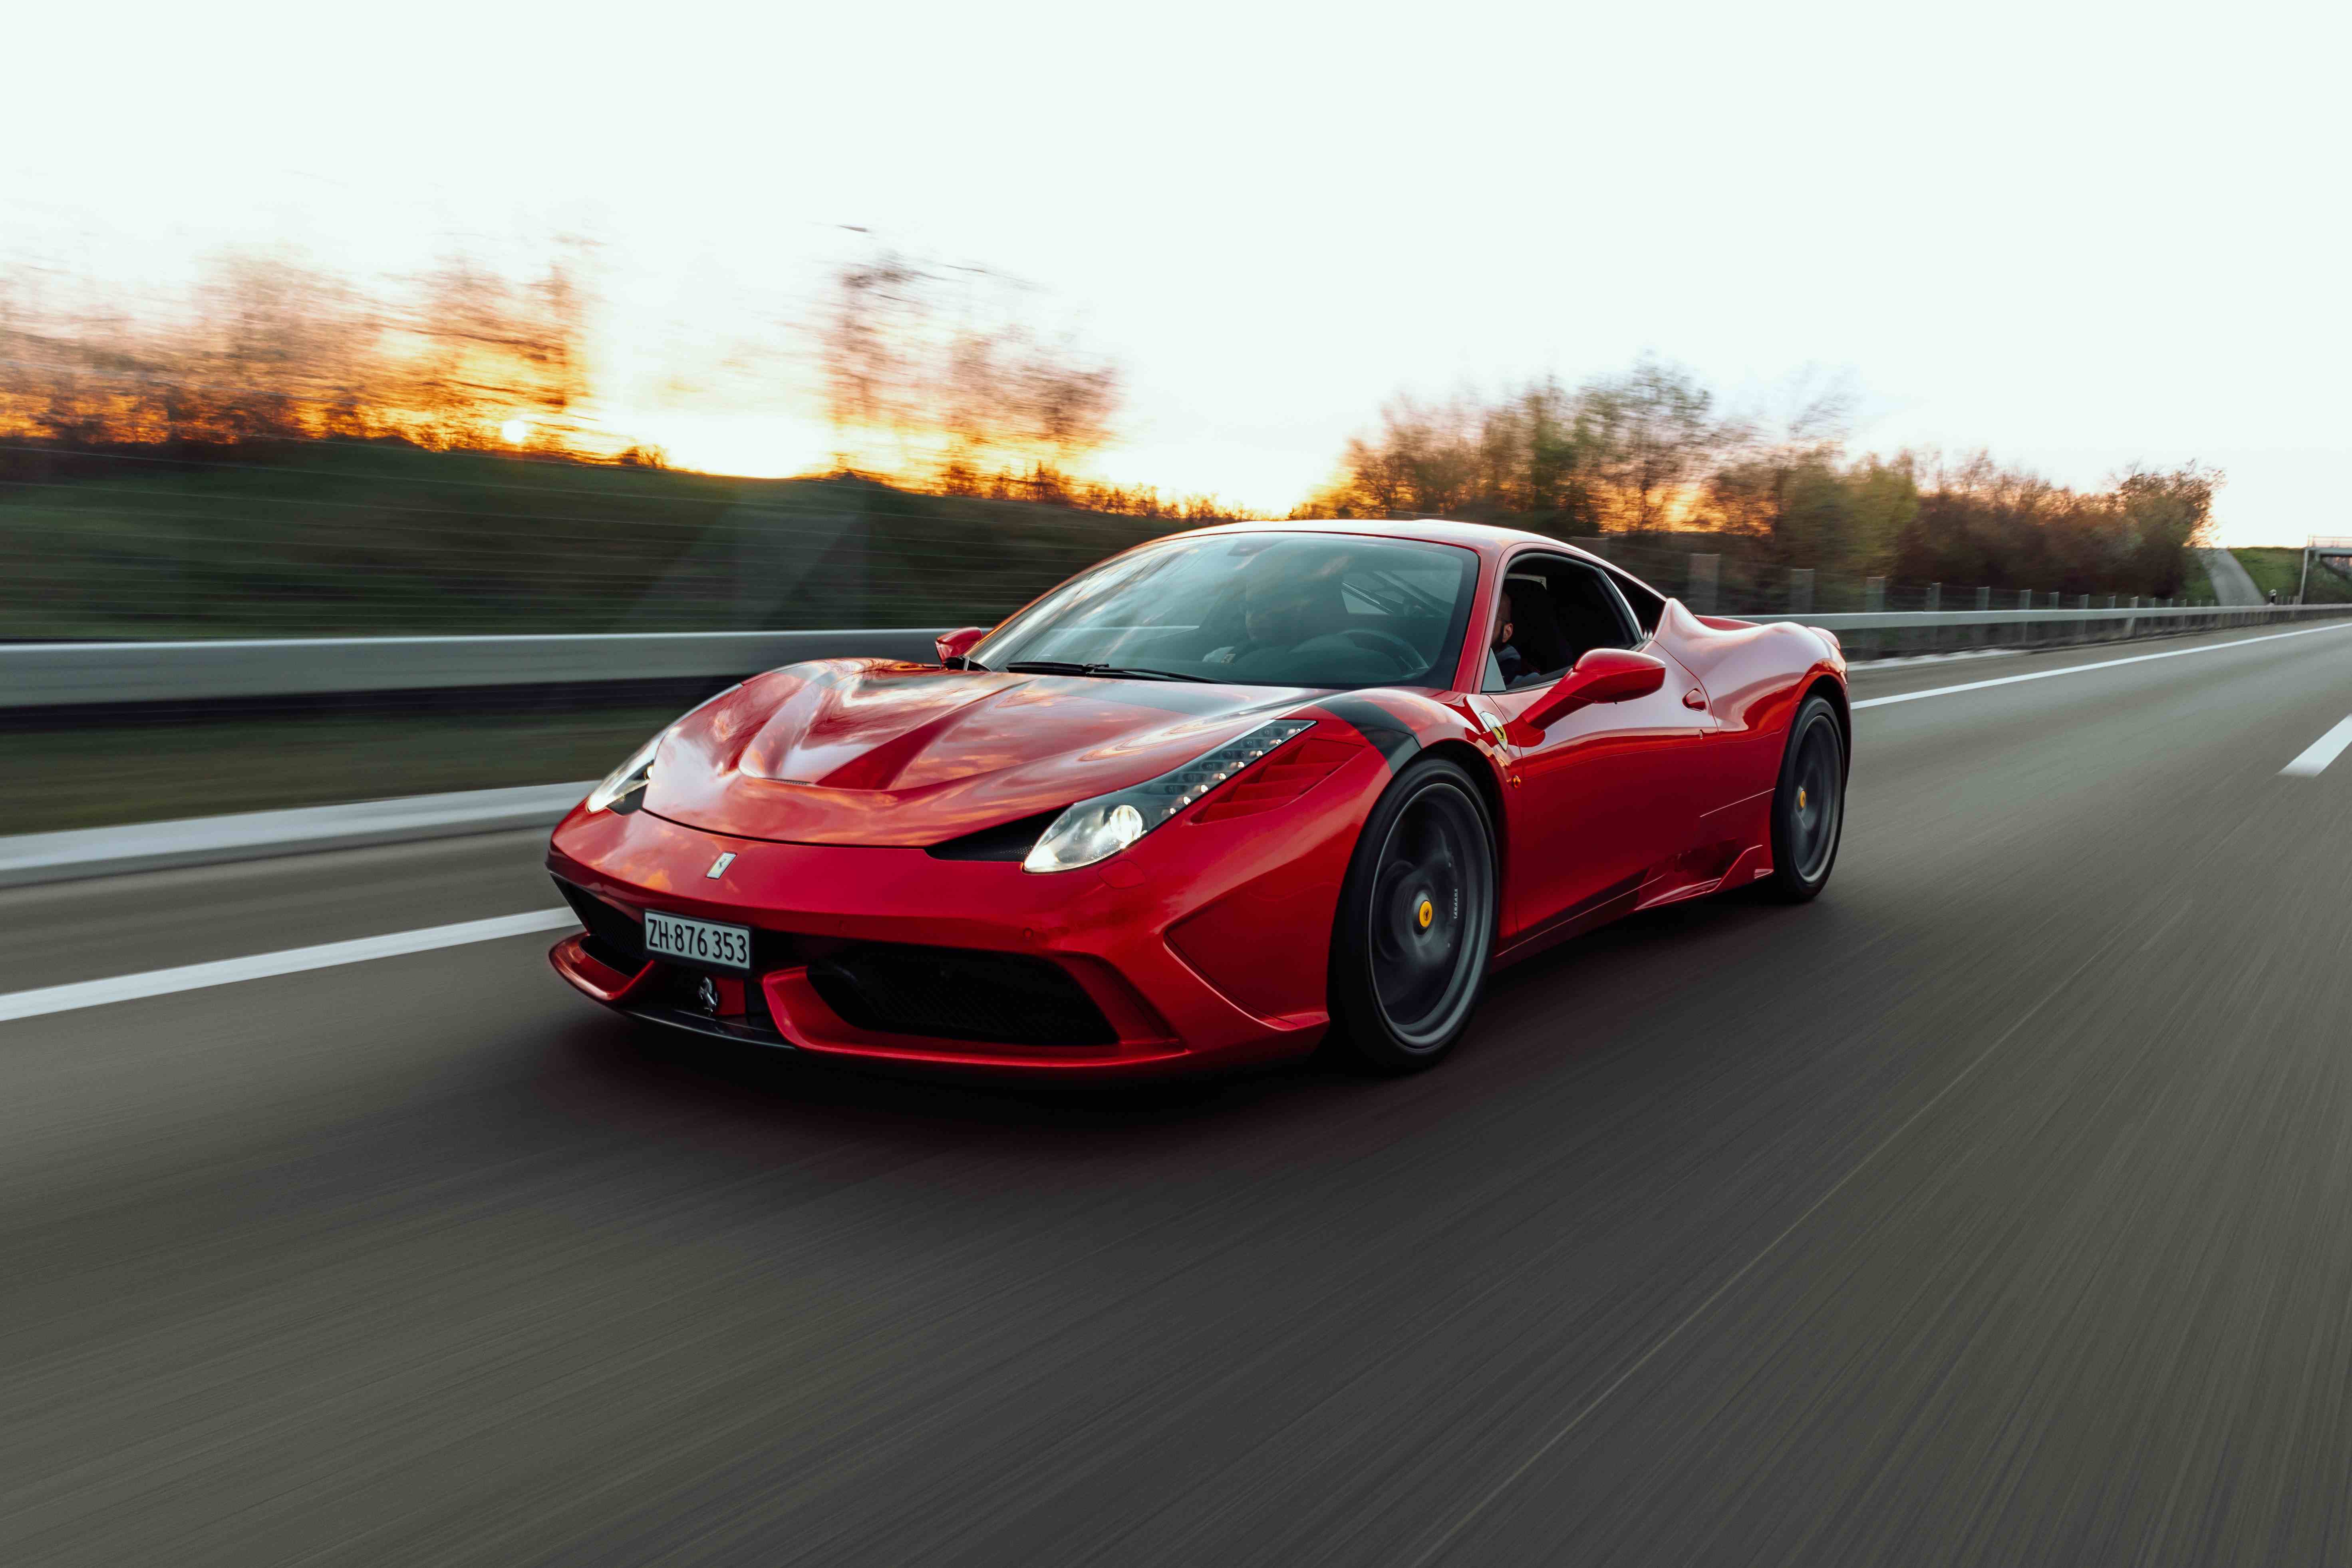 Daniel Explores: What Makes Ferrari So Successful?